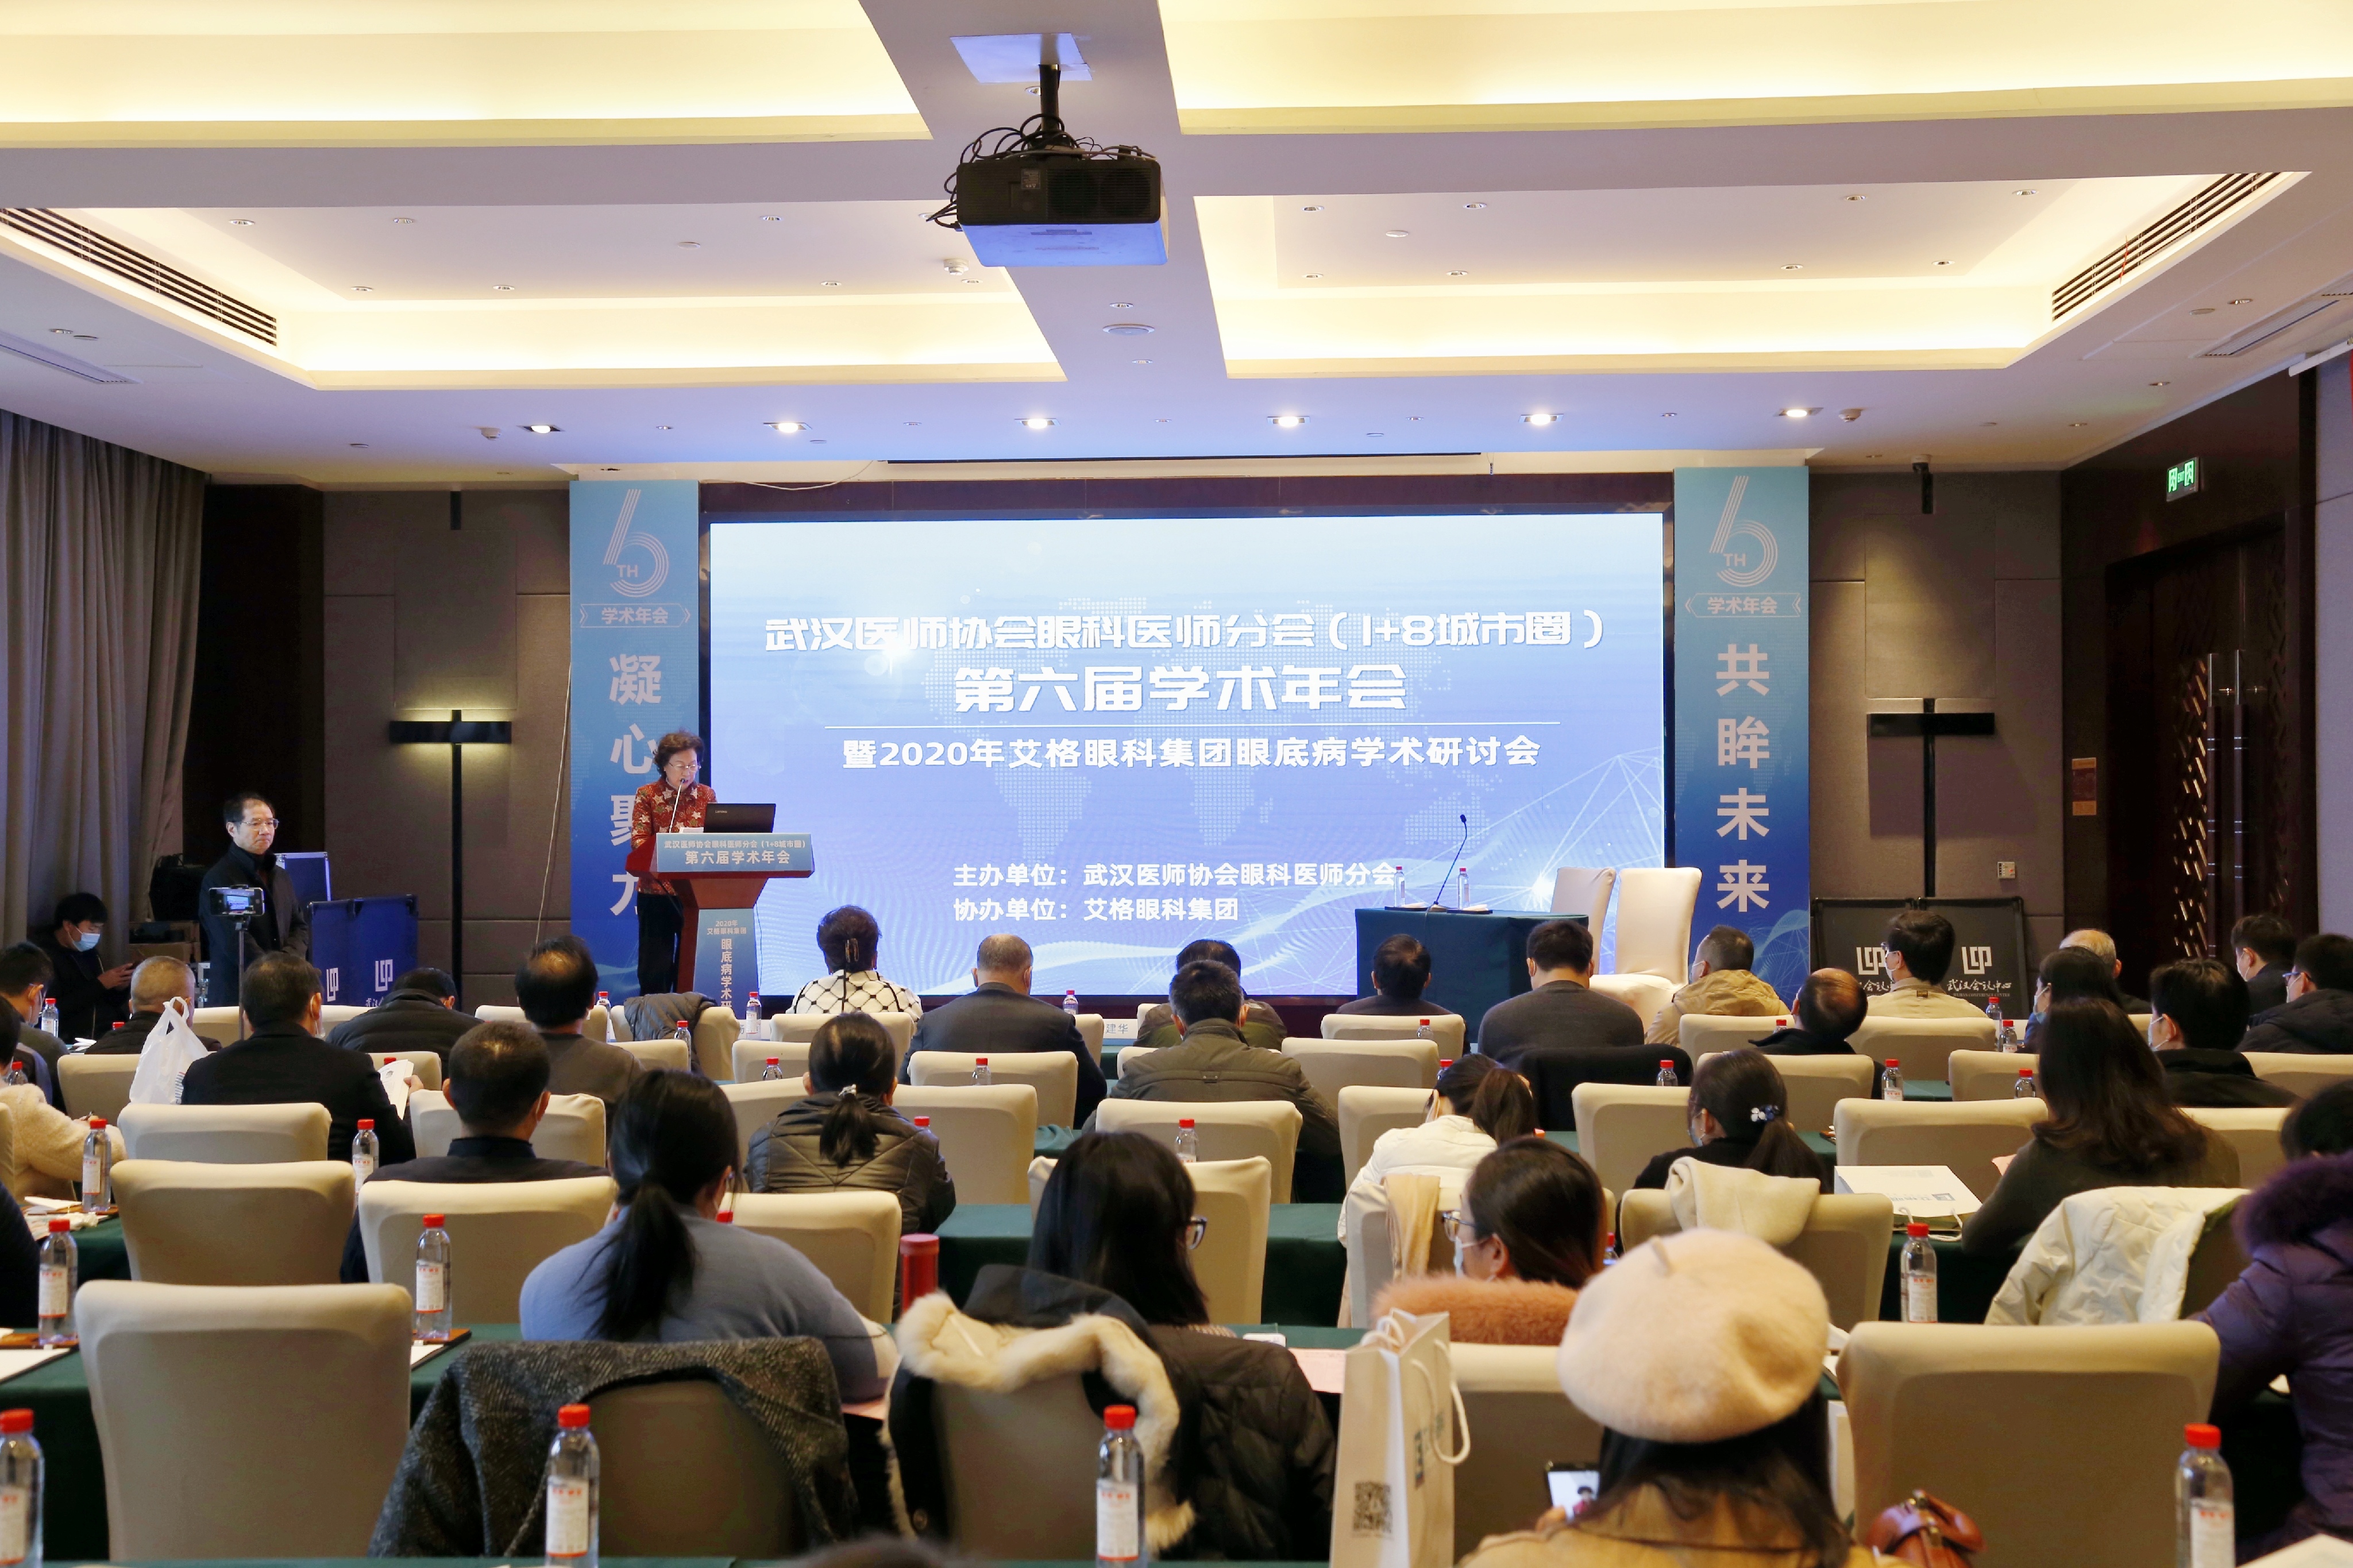 武汉医师协会眼科医师分会（1+8 城市圈）第六届学术年会成功召开